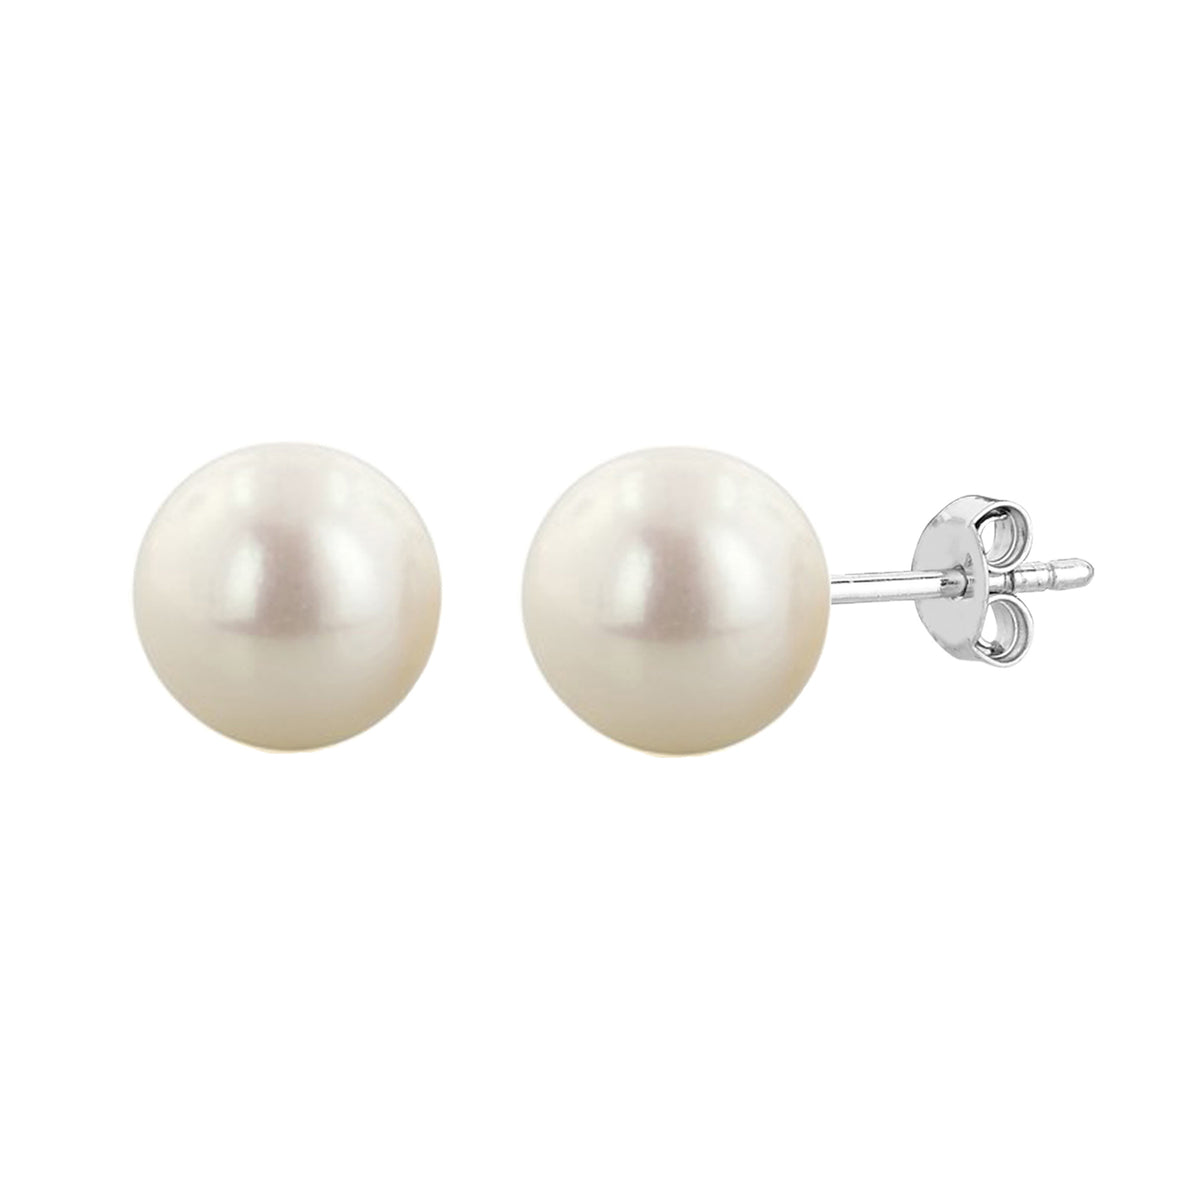 Pendiente de tuerca con perla blanca de agua dulce de 4 mm con acabado en rodio y plata de ley, joyería fina de diseño para hombres y mujeres